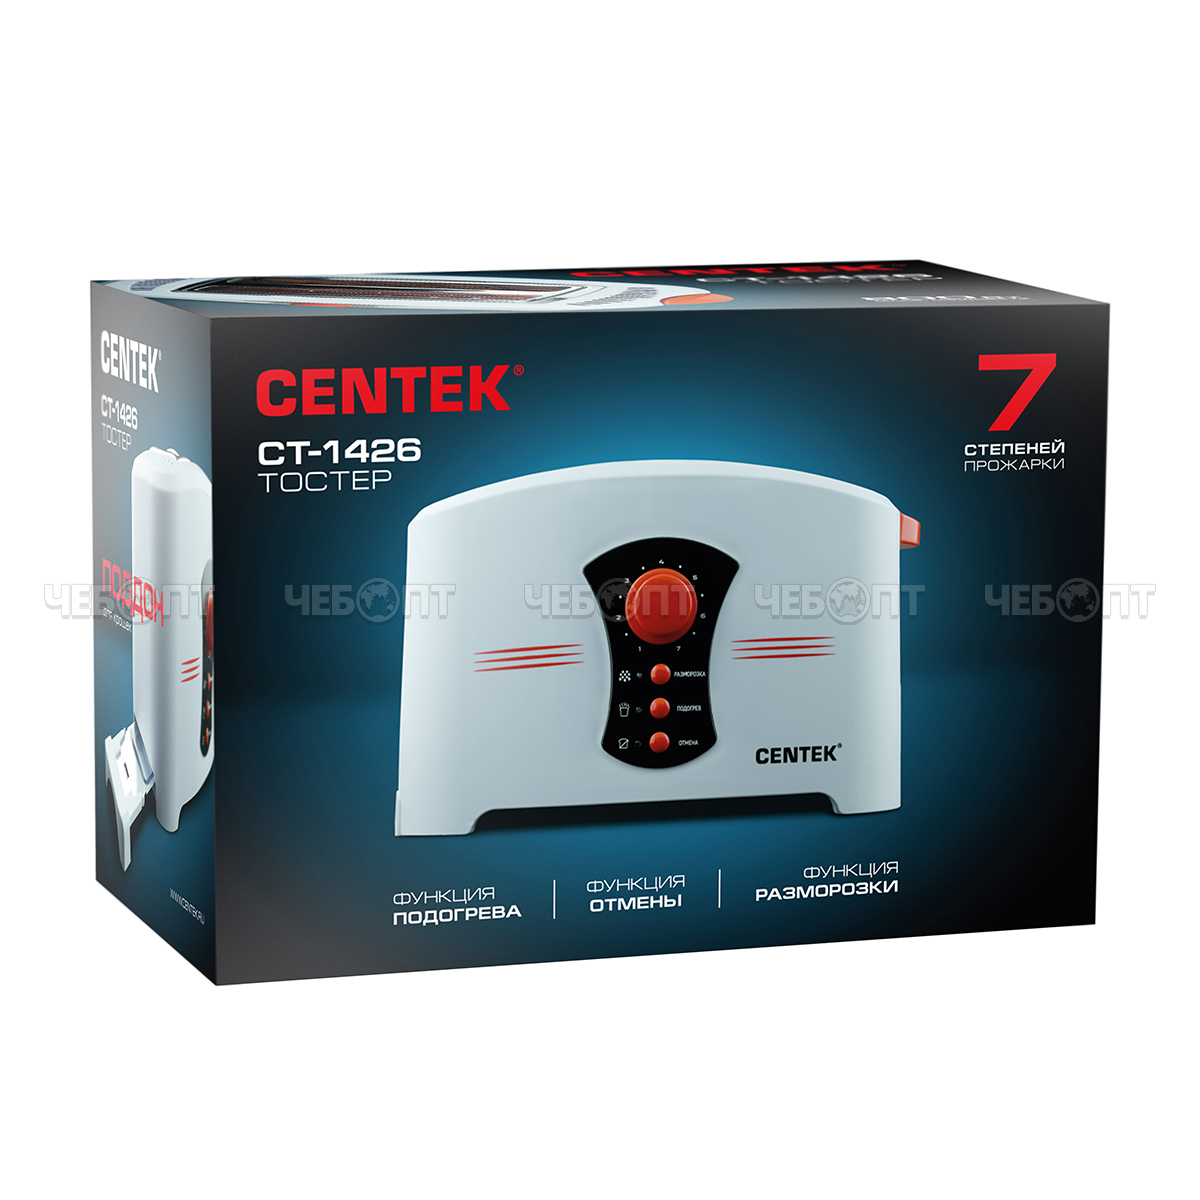 Тостер CENTEK CT-1426 7 уровней мощности, 2 тоста, функции разморозка, мощность 800 Вт [6]. ЧЕБОПТ.